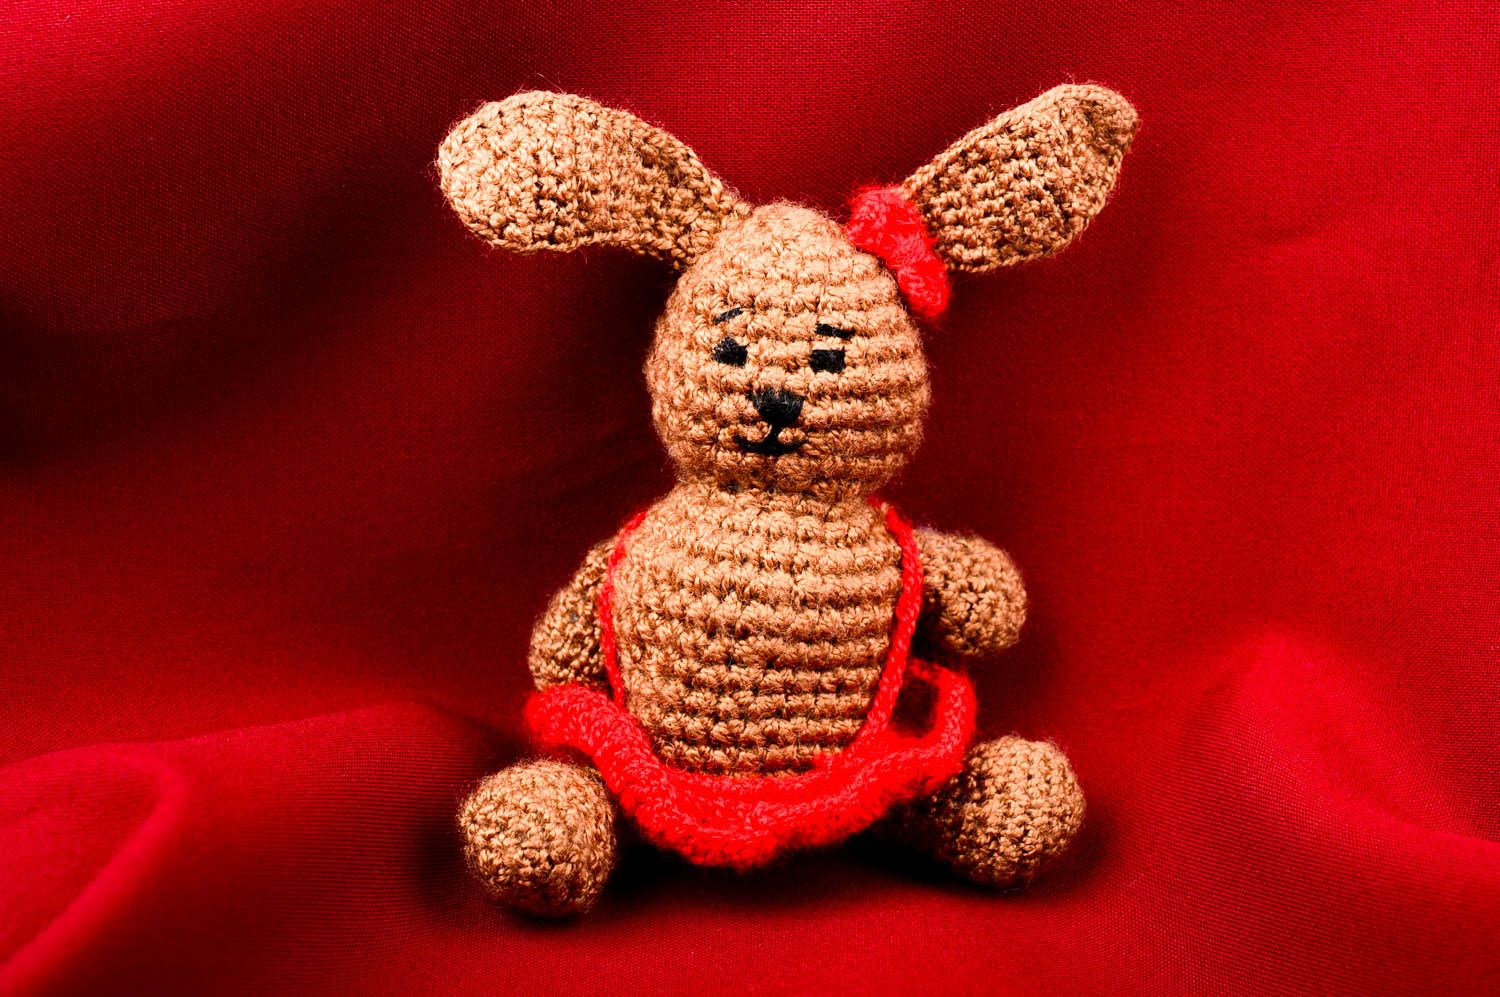 Hand-crocheted toy handmade stuffed toys for babies nursery decor crochet decor photo 1